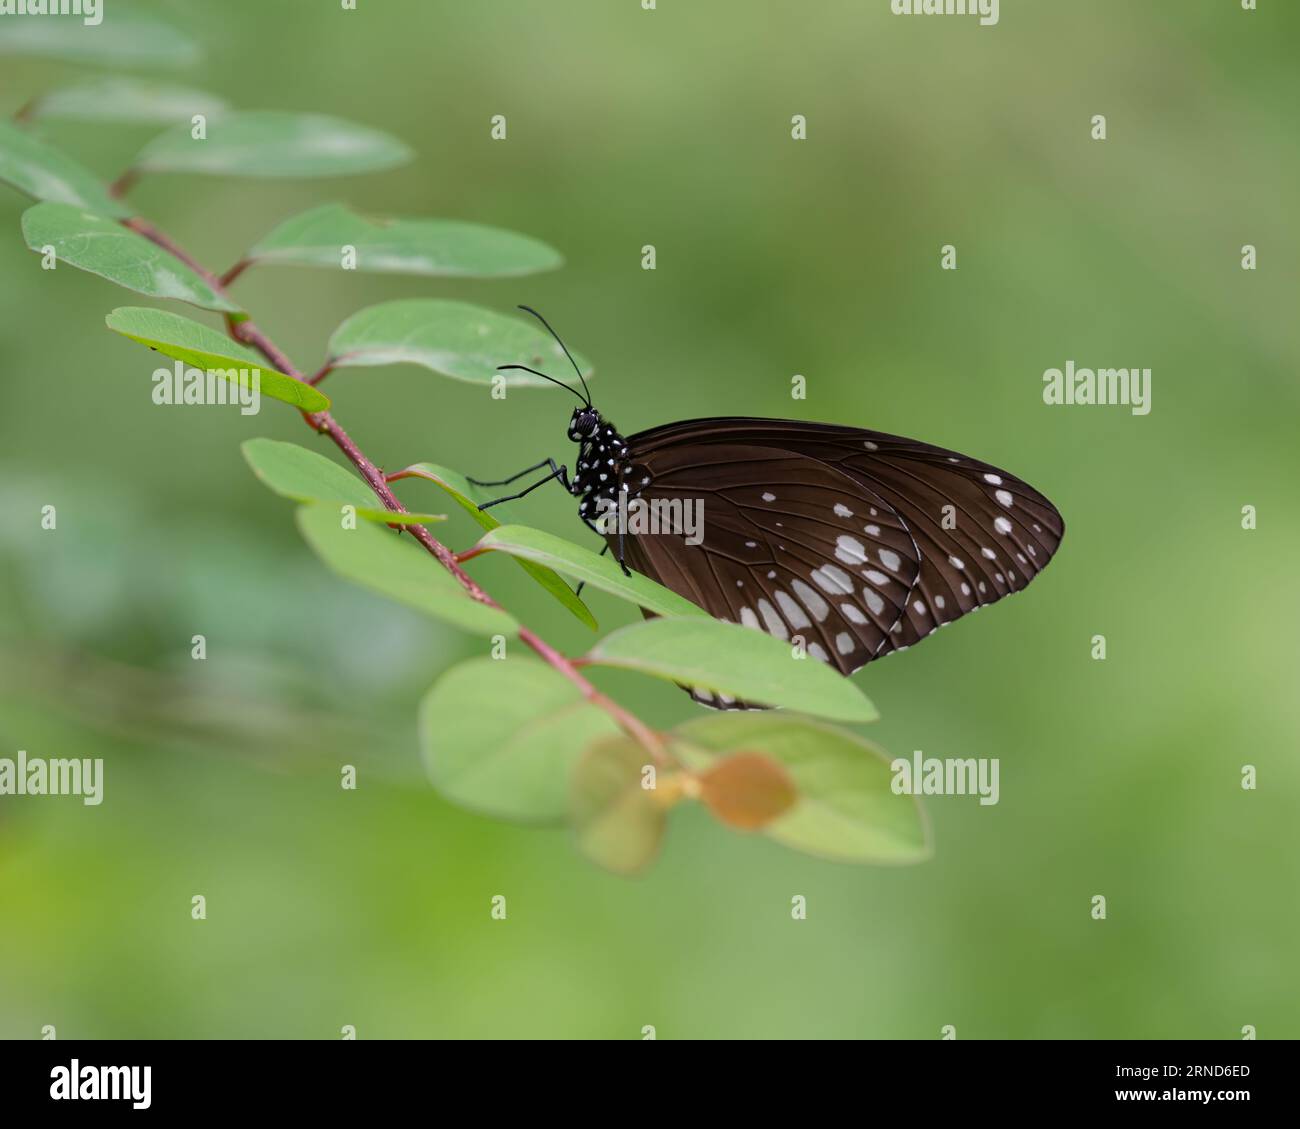 Gros plan d'un papillon corbeau commun (noyau Euploea), perché sur une feuille de plante dans le jardin. Également connu sous le nom de corbeau indien commun ou corbeau australien. Banque D'Images